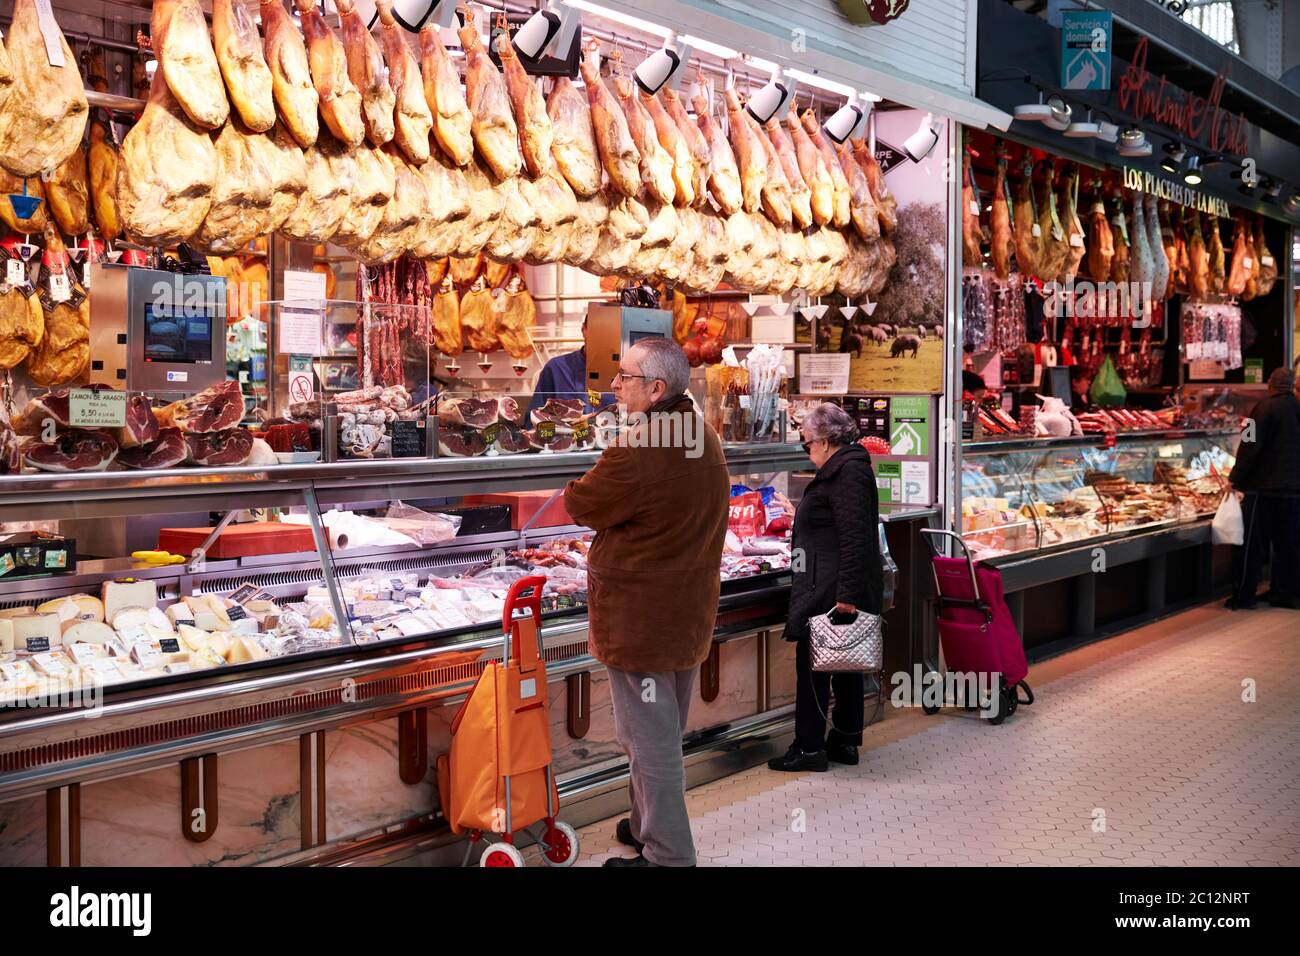 Étals vendant de la viande et des fromages au marché central de Valence, Espagne. Banque D'Images